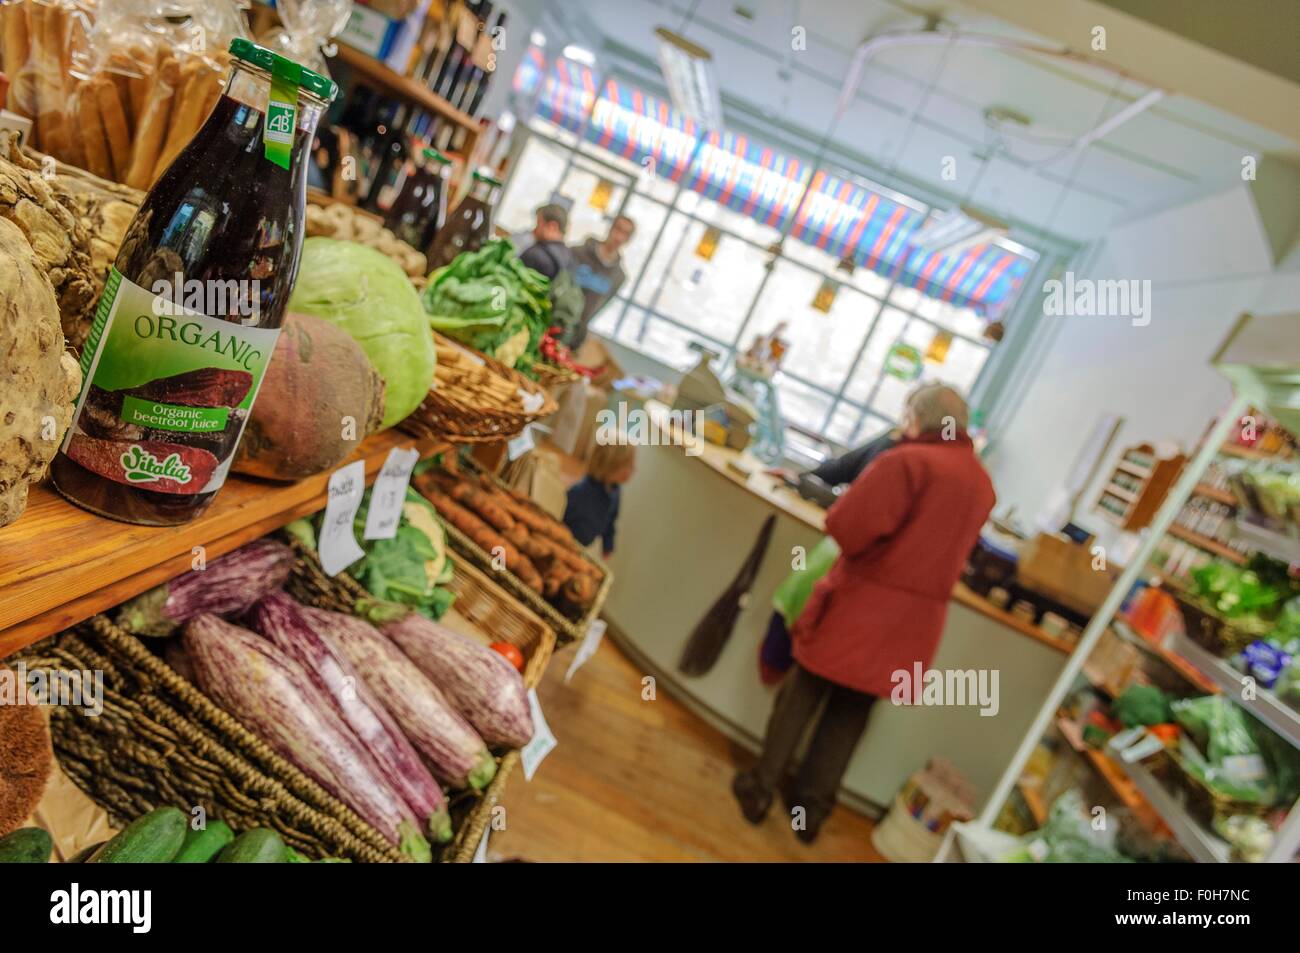 Trinità wholefoods. un health food e organico negozio. hastings. east sussex. Inghilterra. Regno Unito Foto Stock